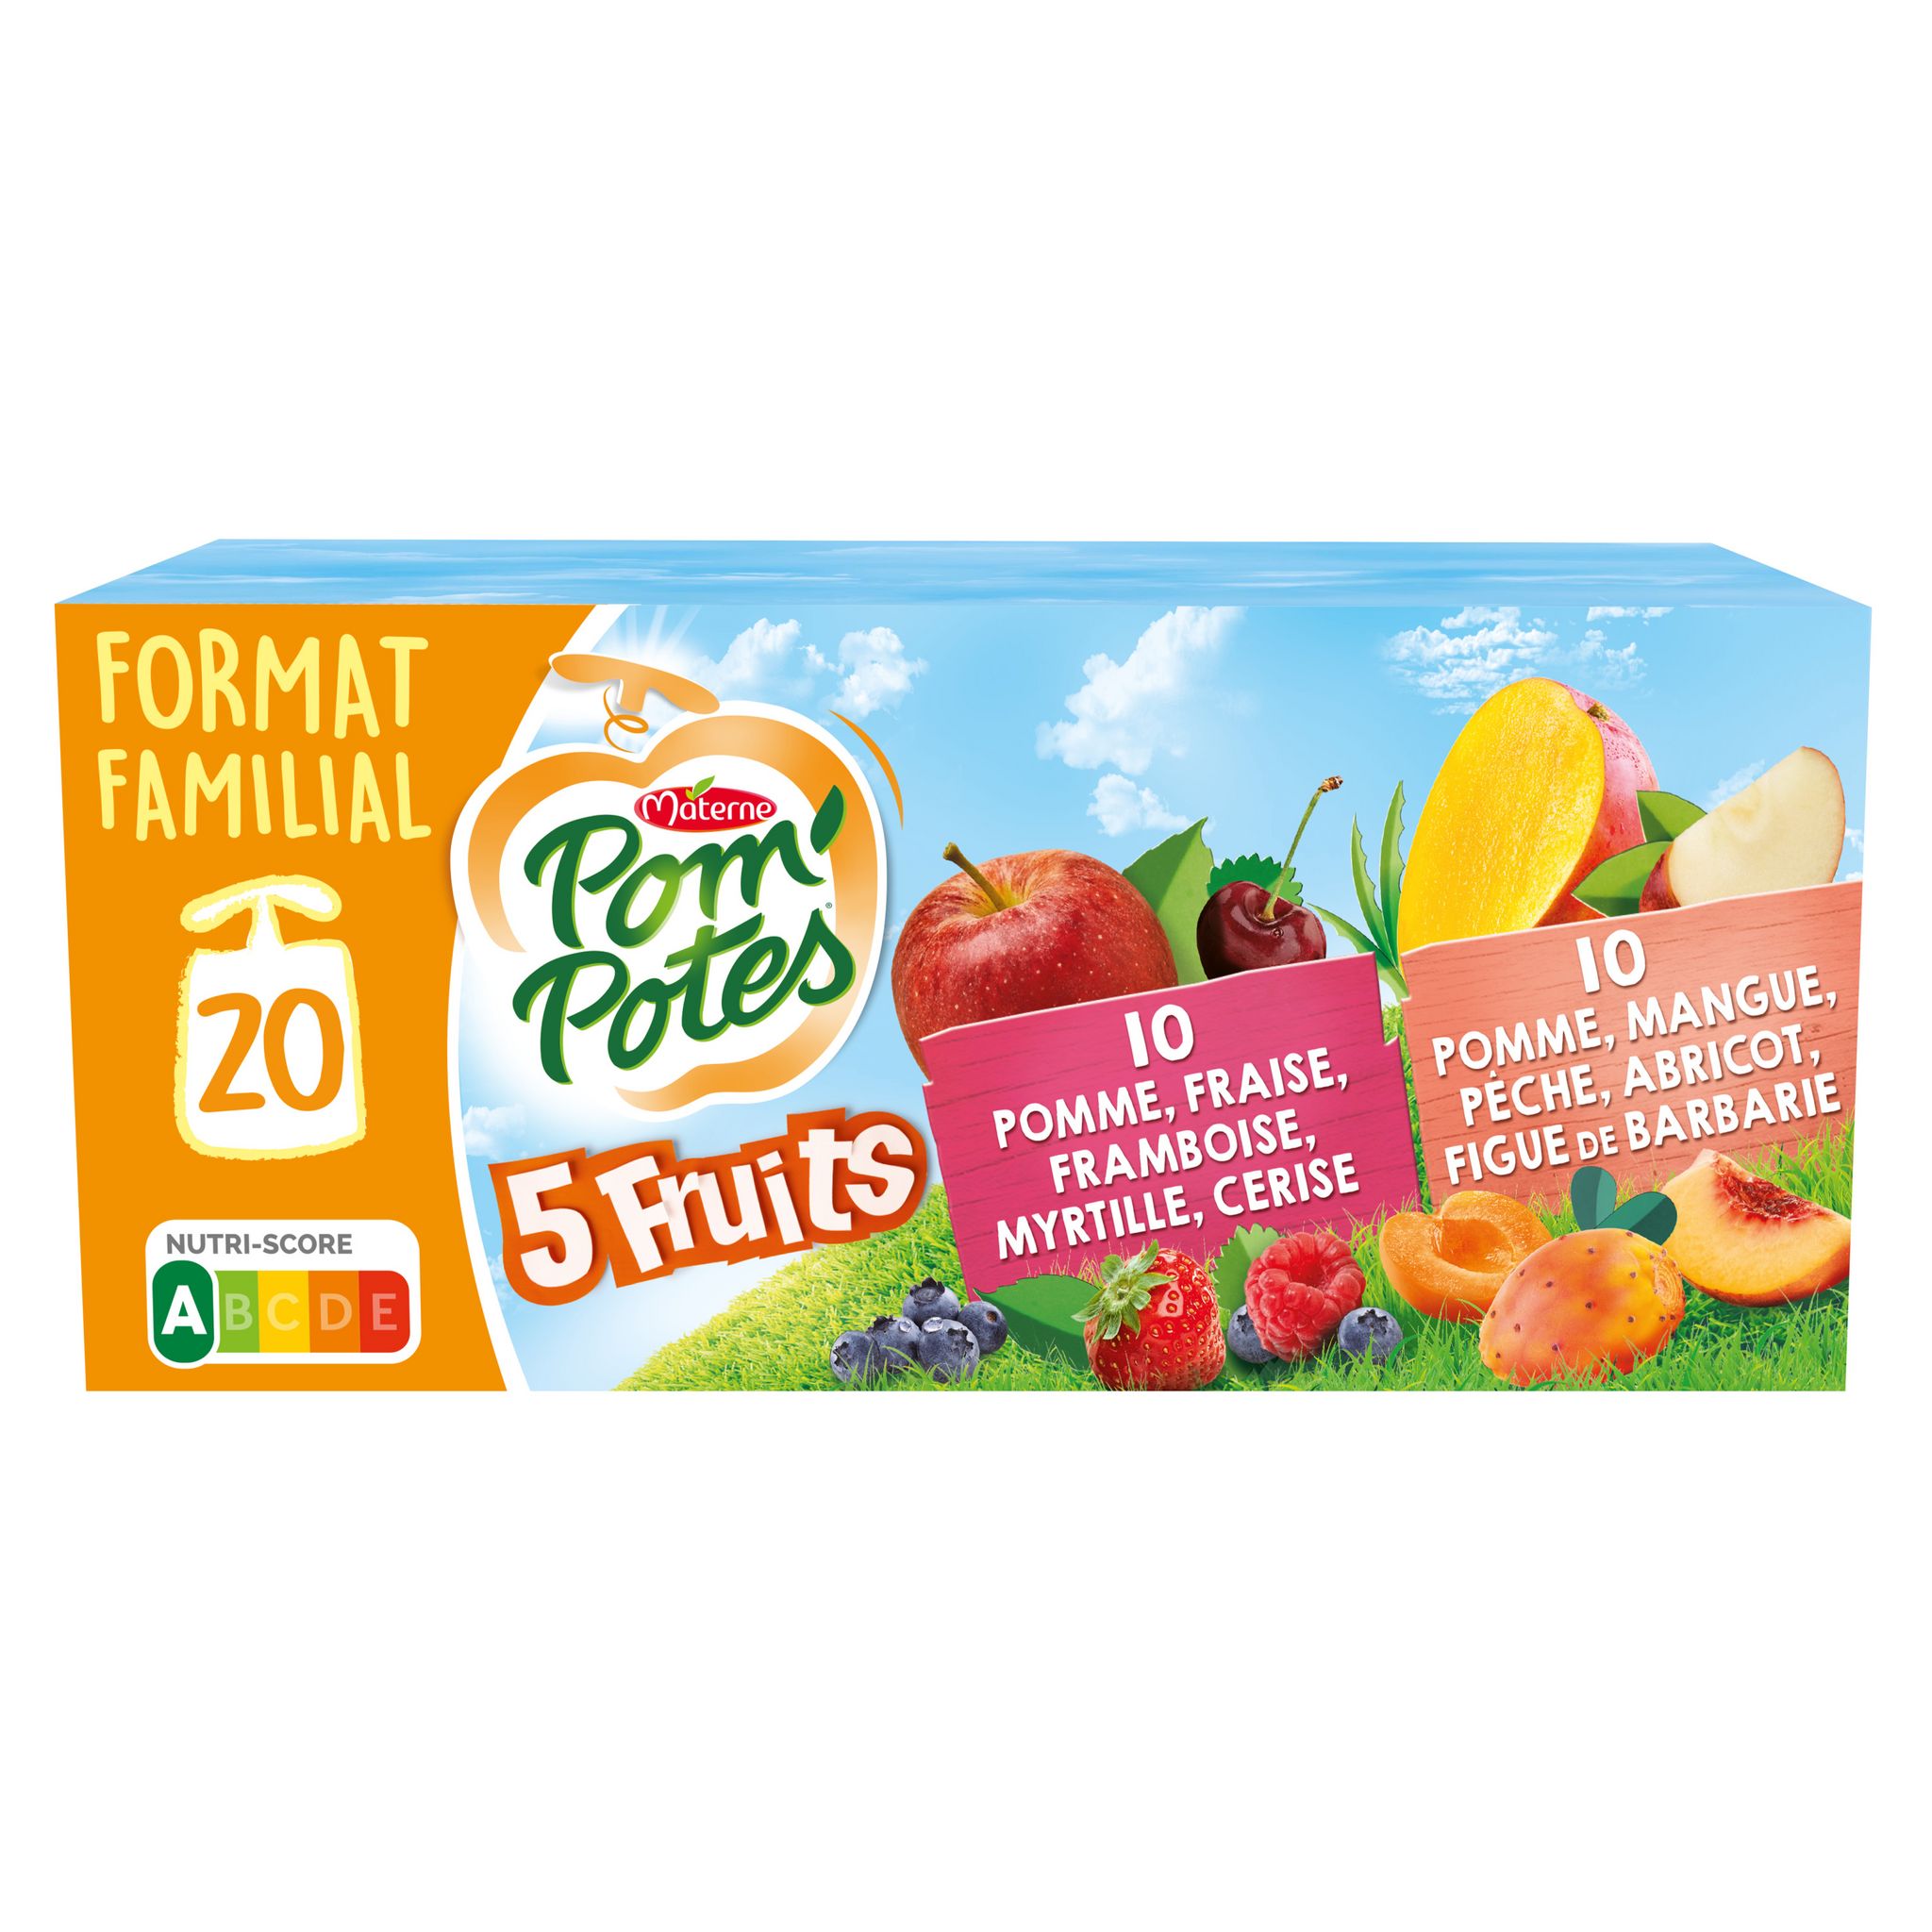 POM'POTES Gourdes 5 fruits pomme fraise framboise myrtille cerise et pomme  mangue pèche abricot figue de Barbare 20 gourdes 1080g pas cher 